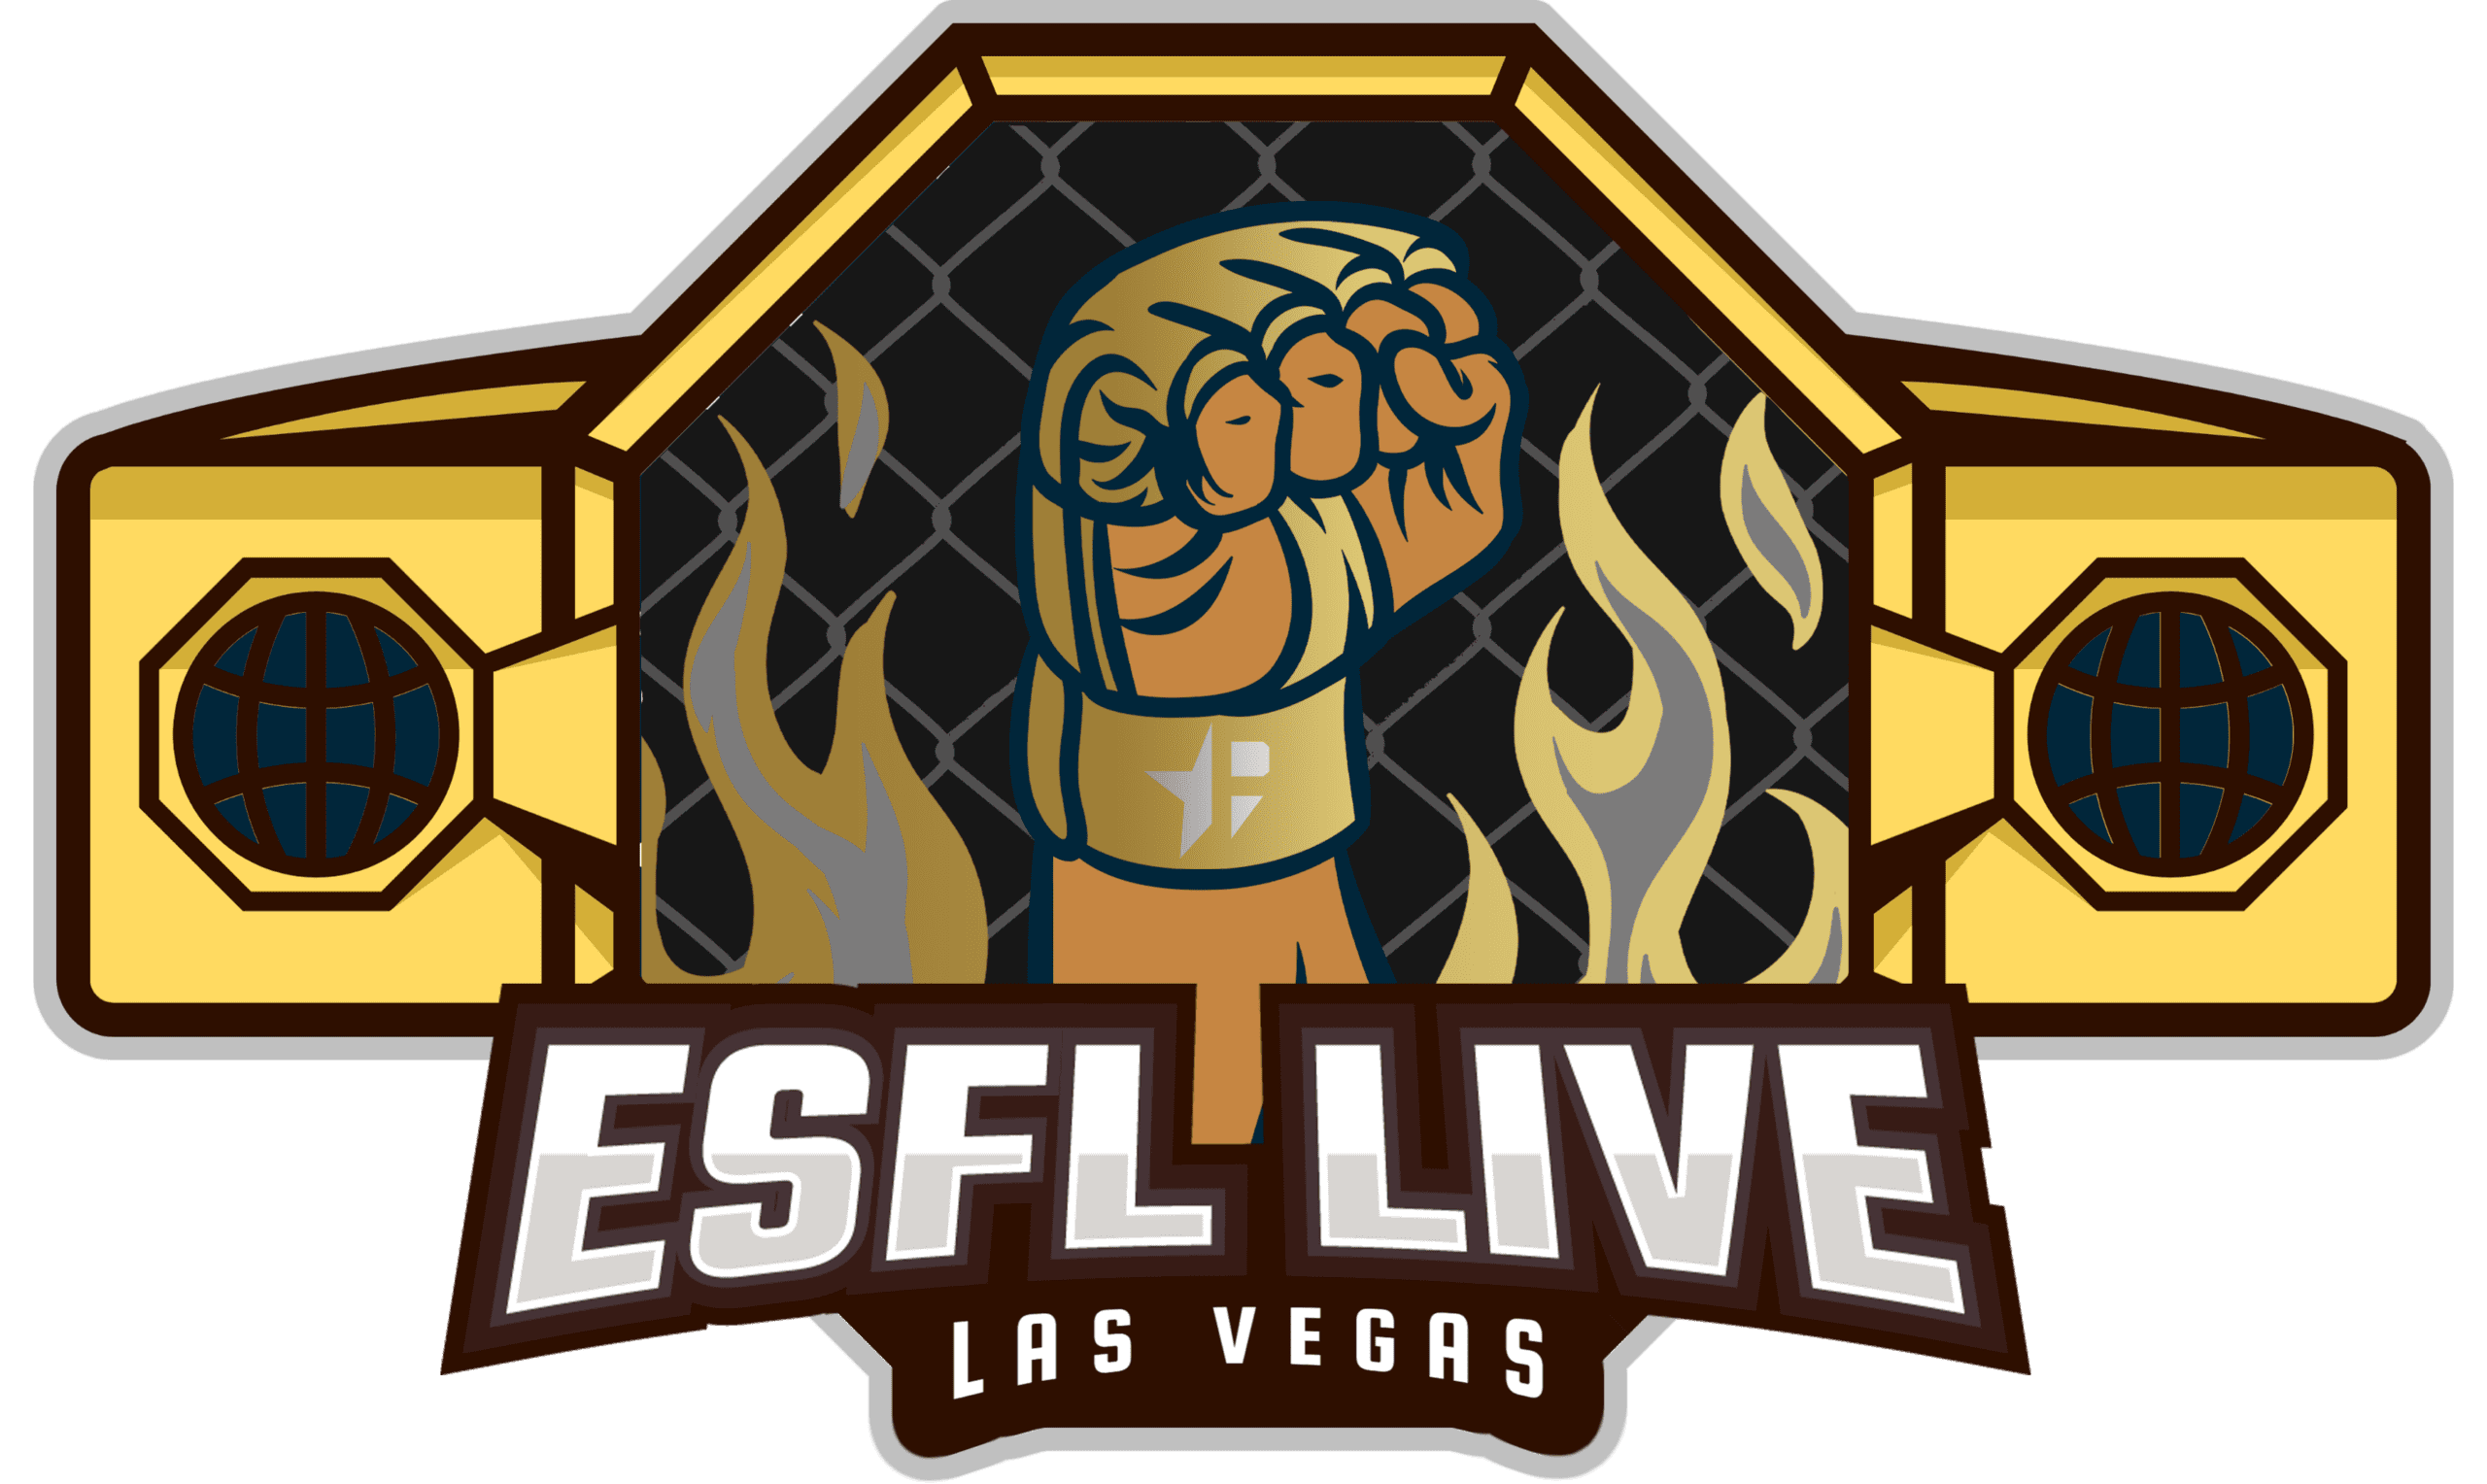 ESFL Live: Las Vegas logo